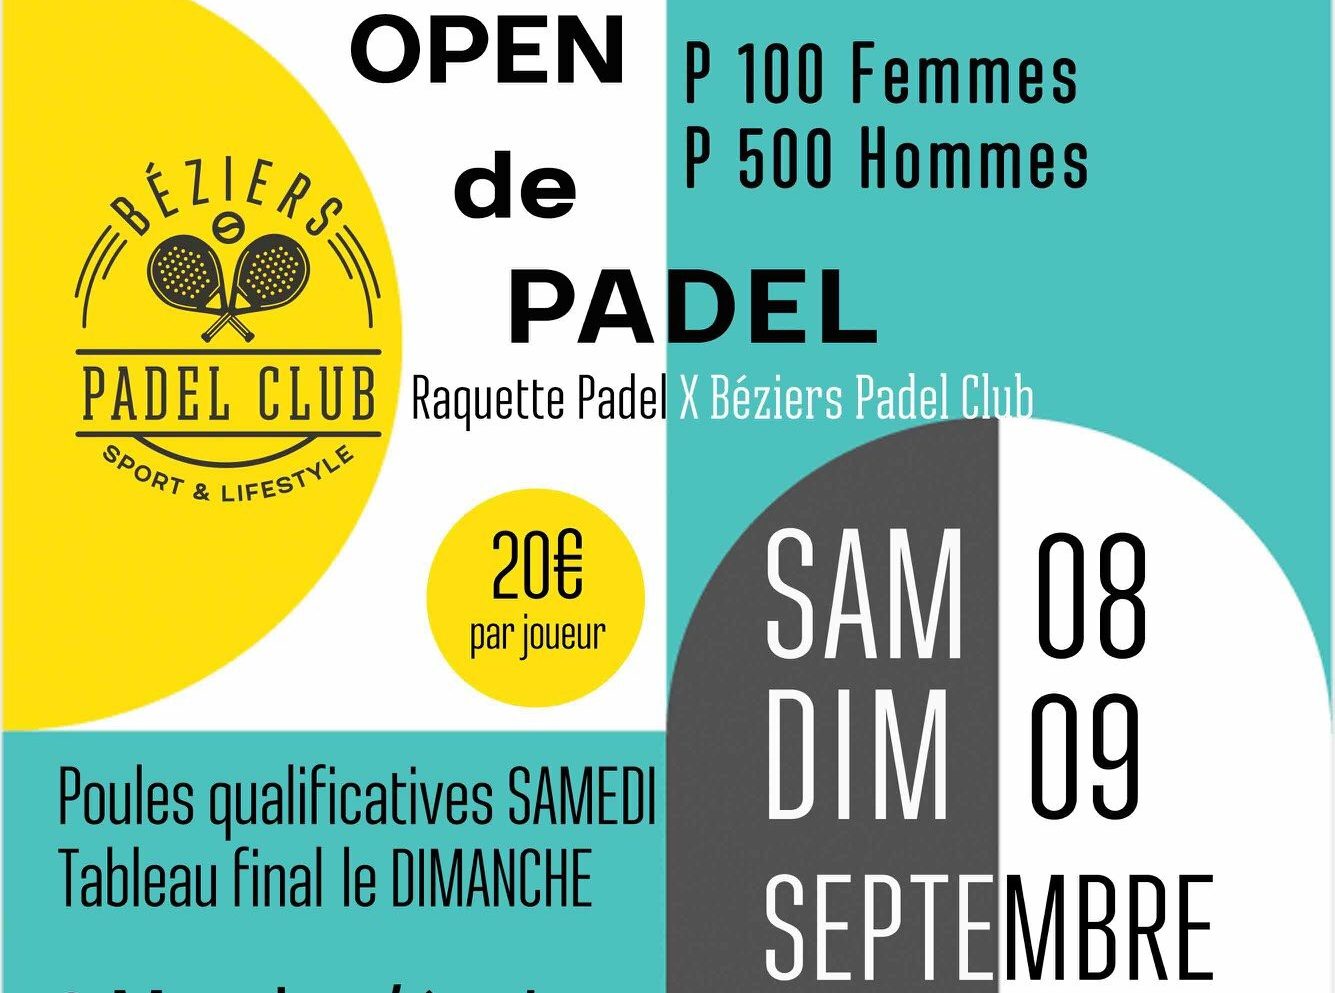 贝济耶 Padel 俱乐部提供其第一场大型比赛 padel